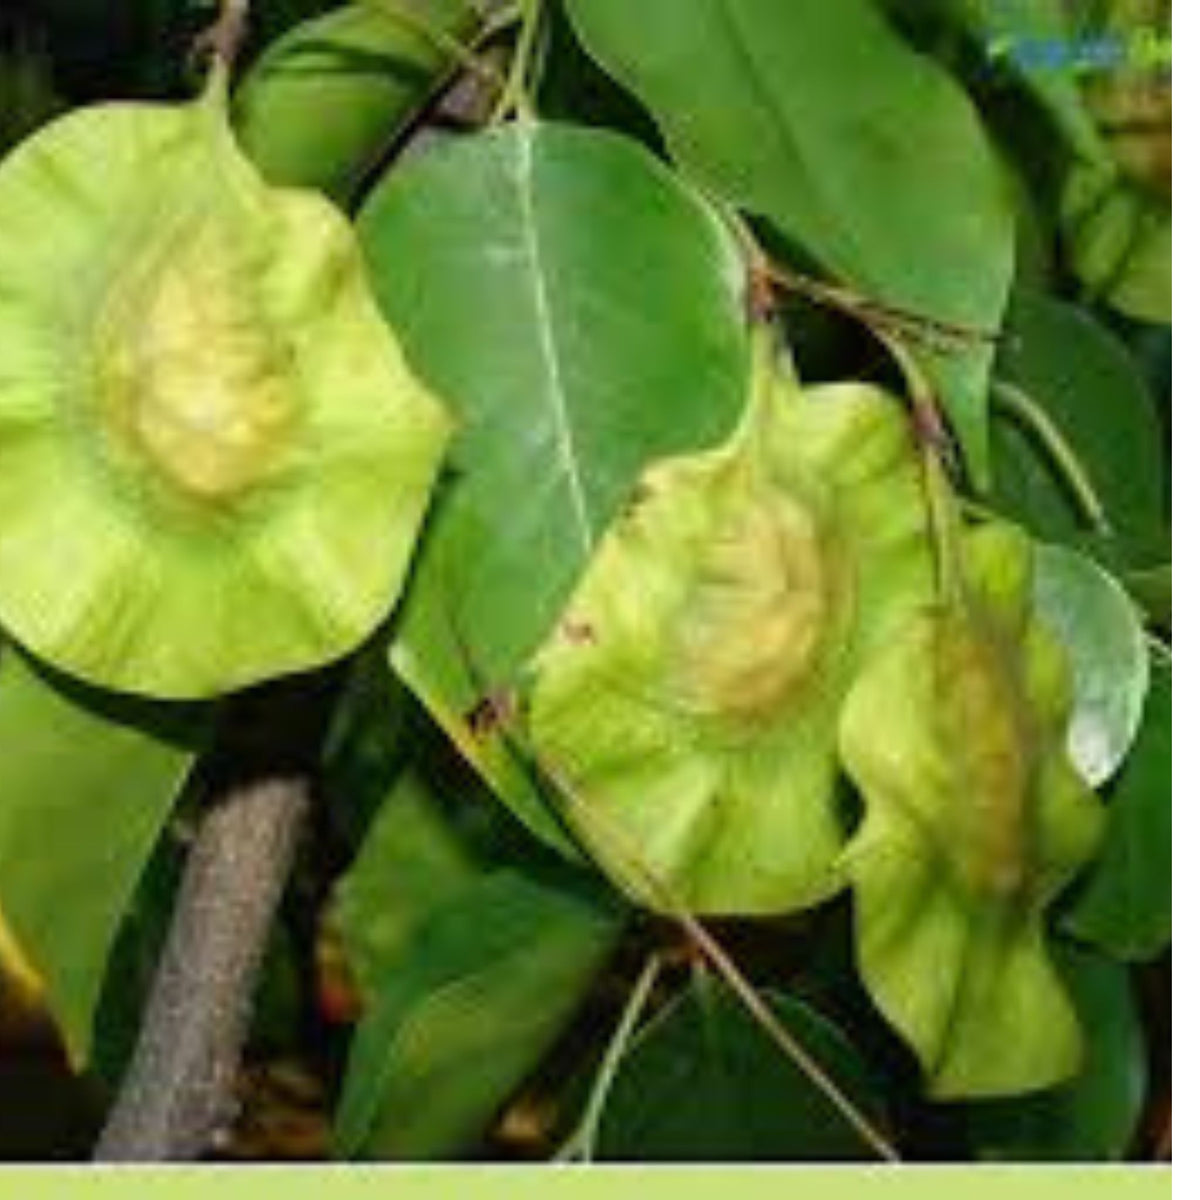 100 Burma padauk Pterocarpus macrocarpus Kurz. Burmese Rosewood, Anda